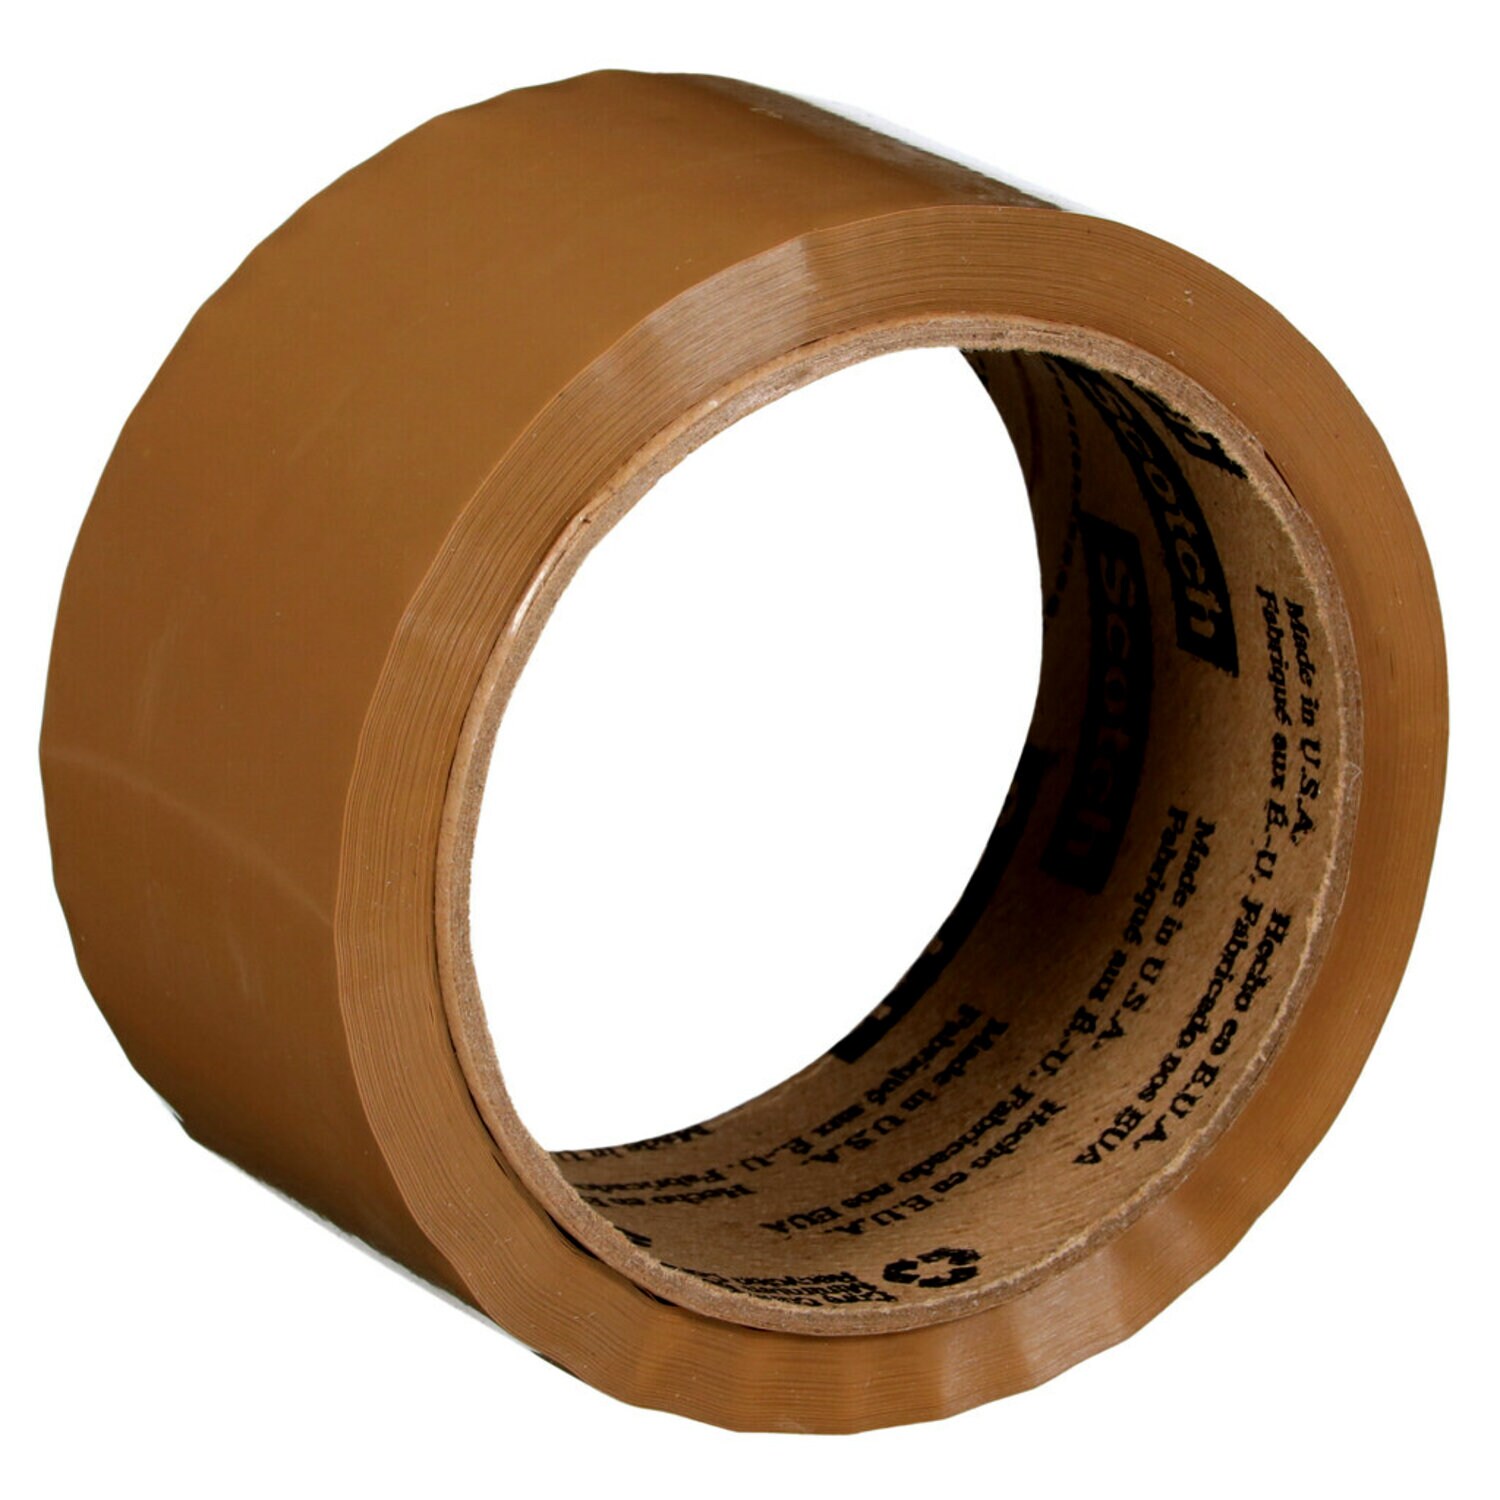 7100041609 - Scotch Box Sealing Tape 371, Tan, 48 mm x 50 m, 36/Case